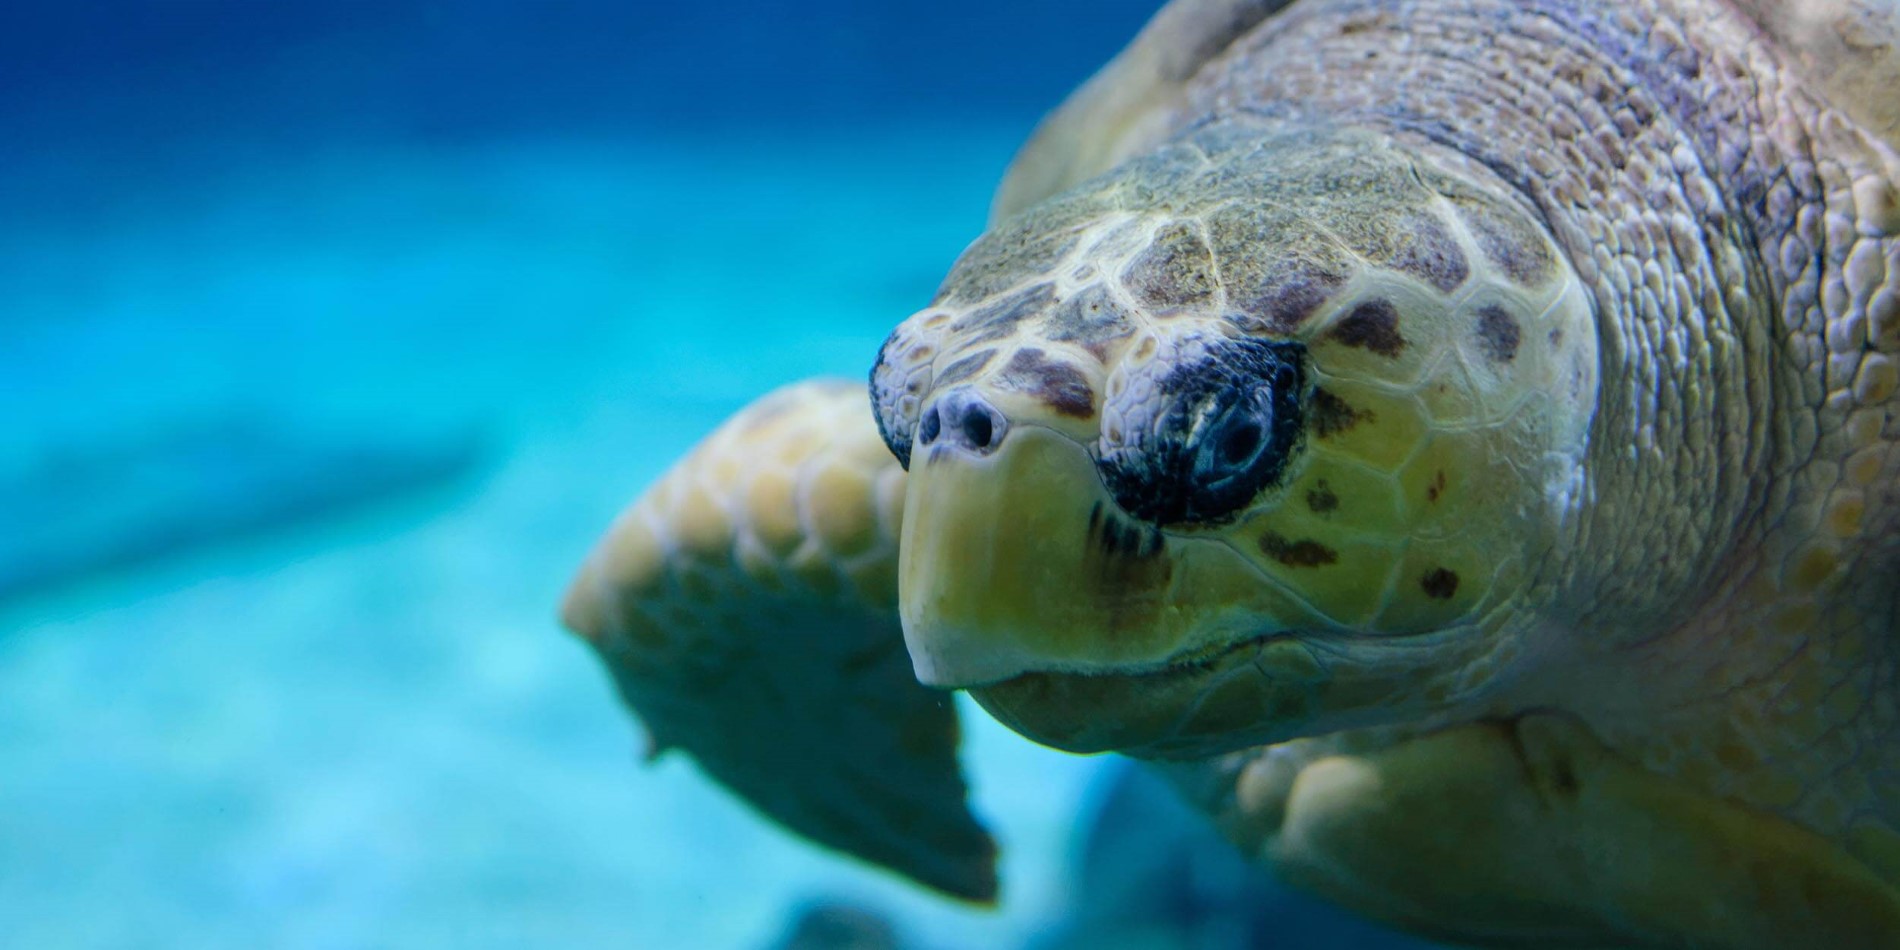 En sköldpadda simning under vatten